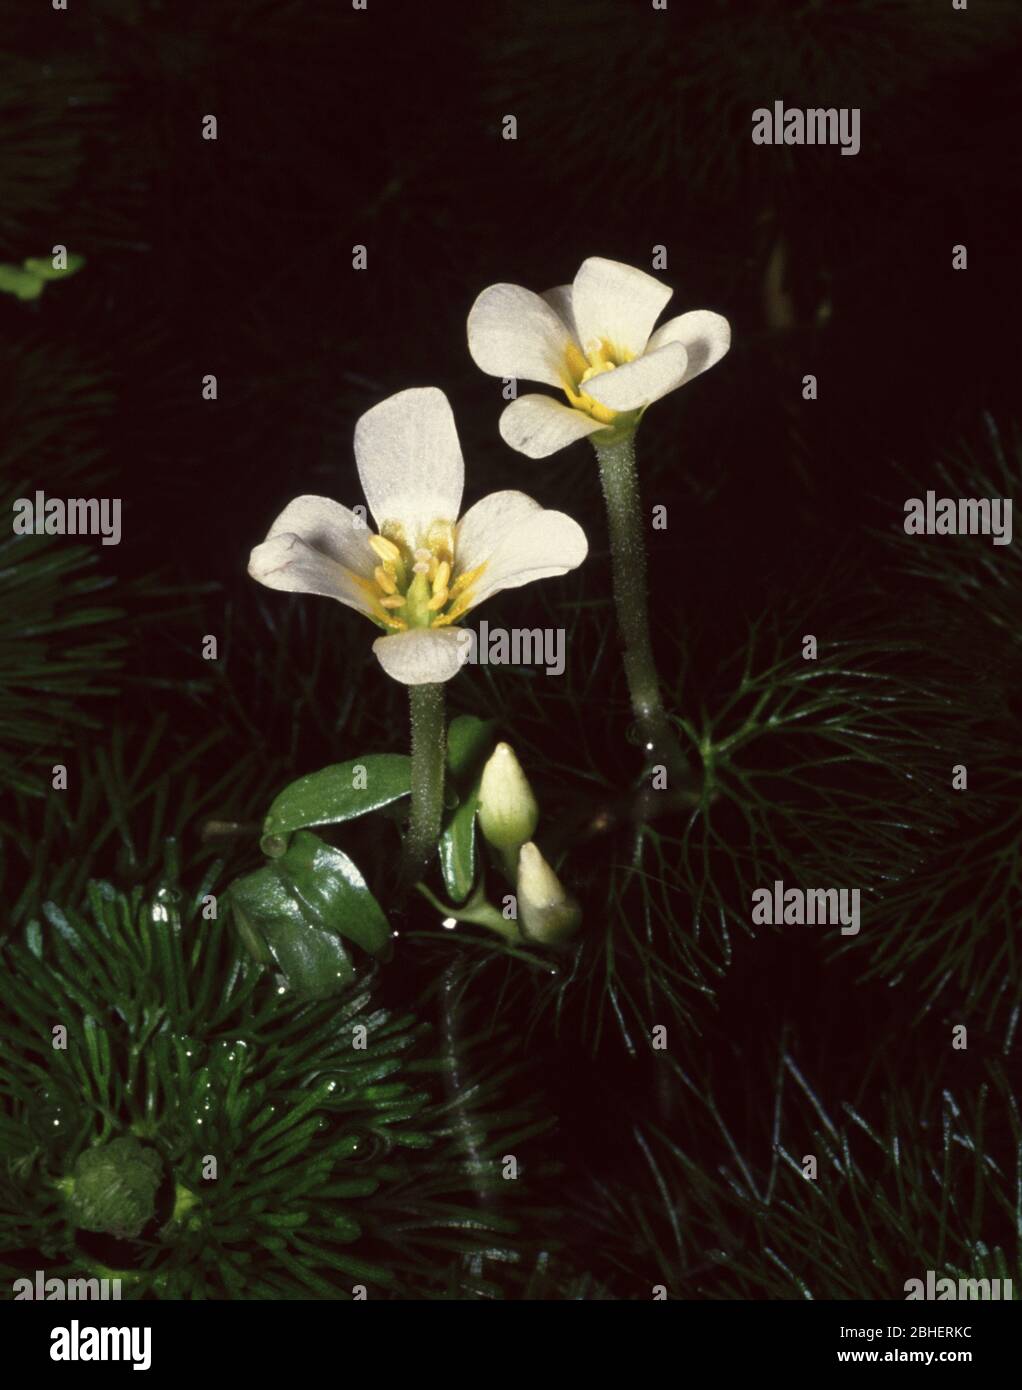 Flower of Carolina fanwort (Cabomba caroliniana) Stock Photo